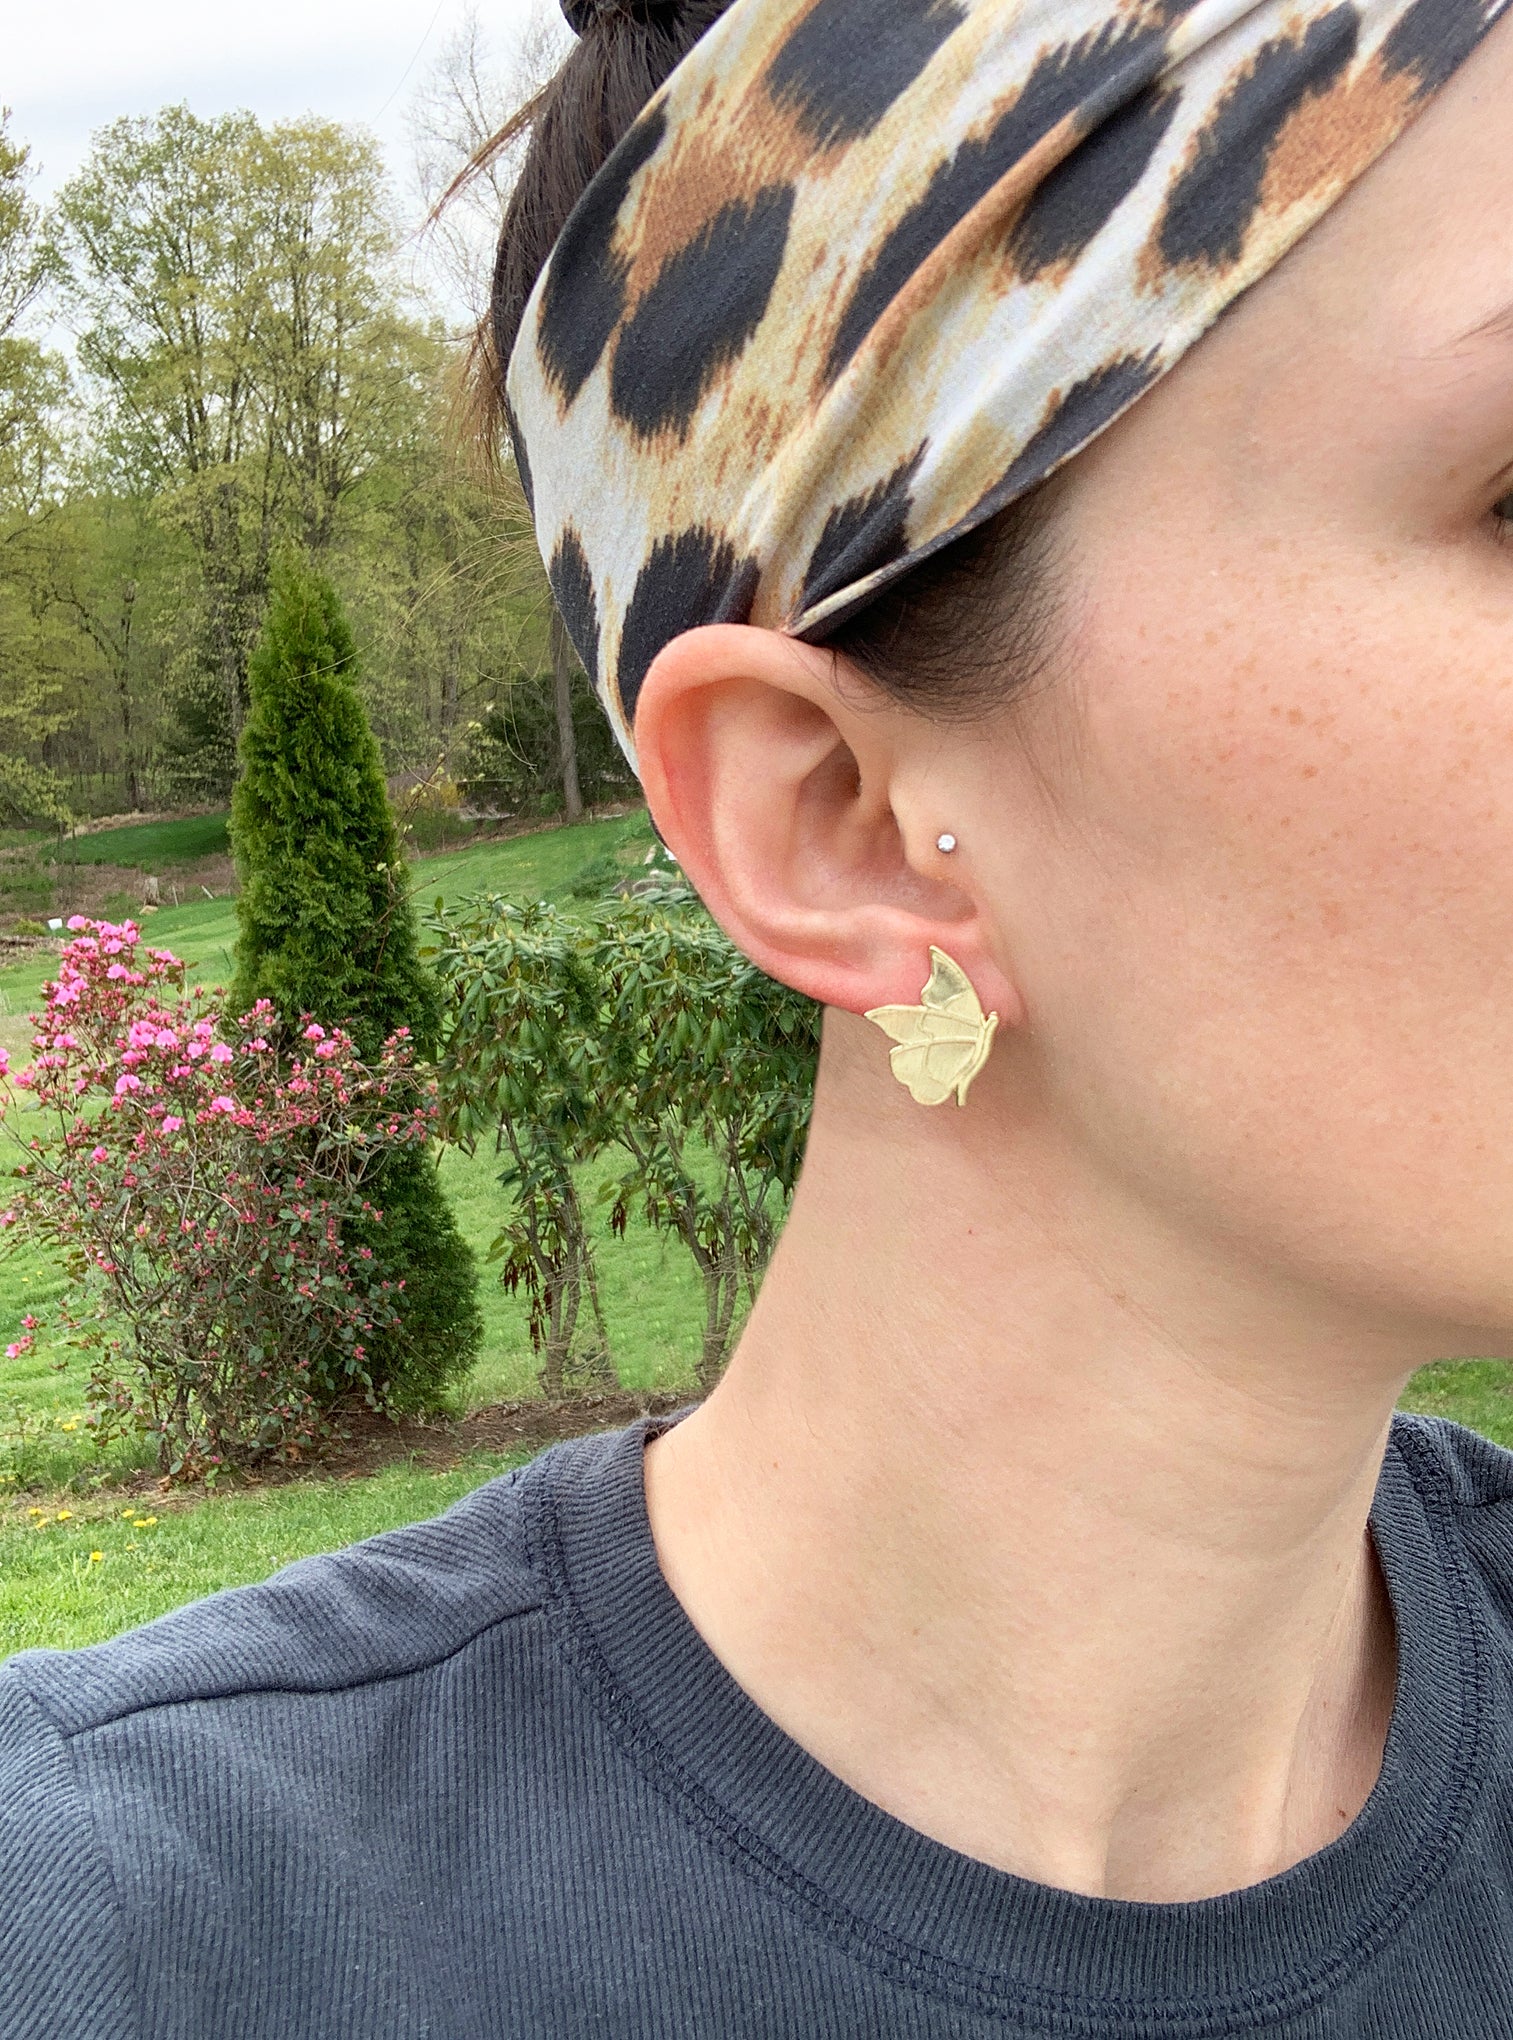 Sheila Fajl Maribelle Butterfly Stud Earrings in Brushed Gold Plated